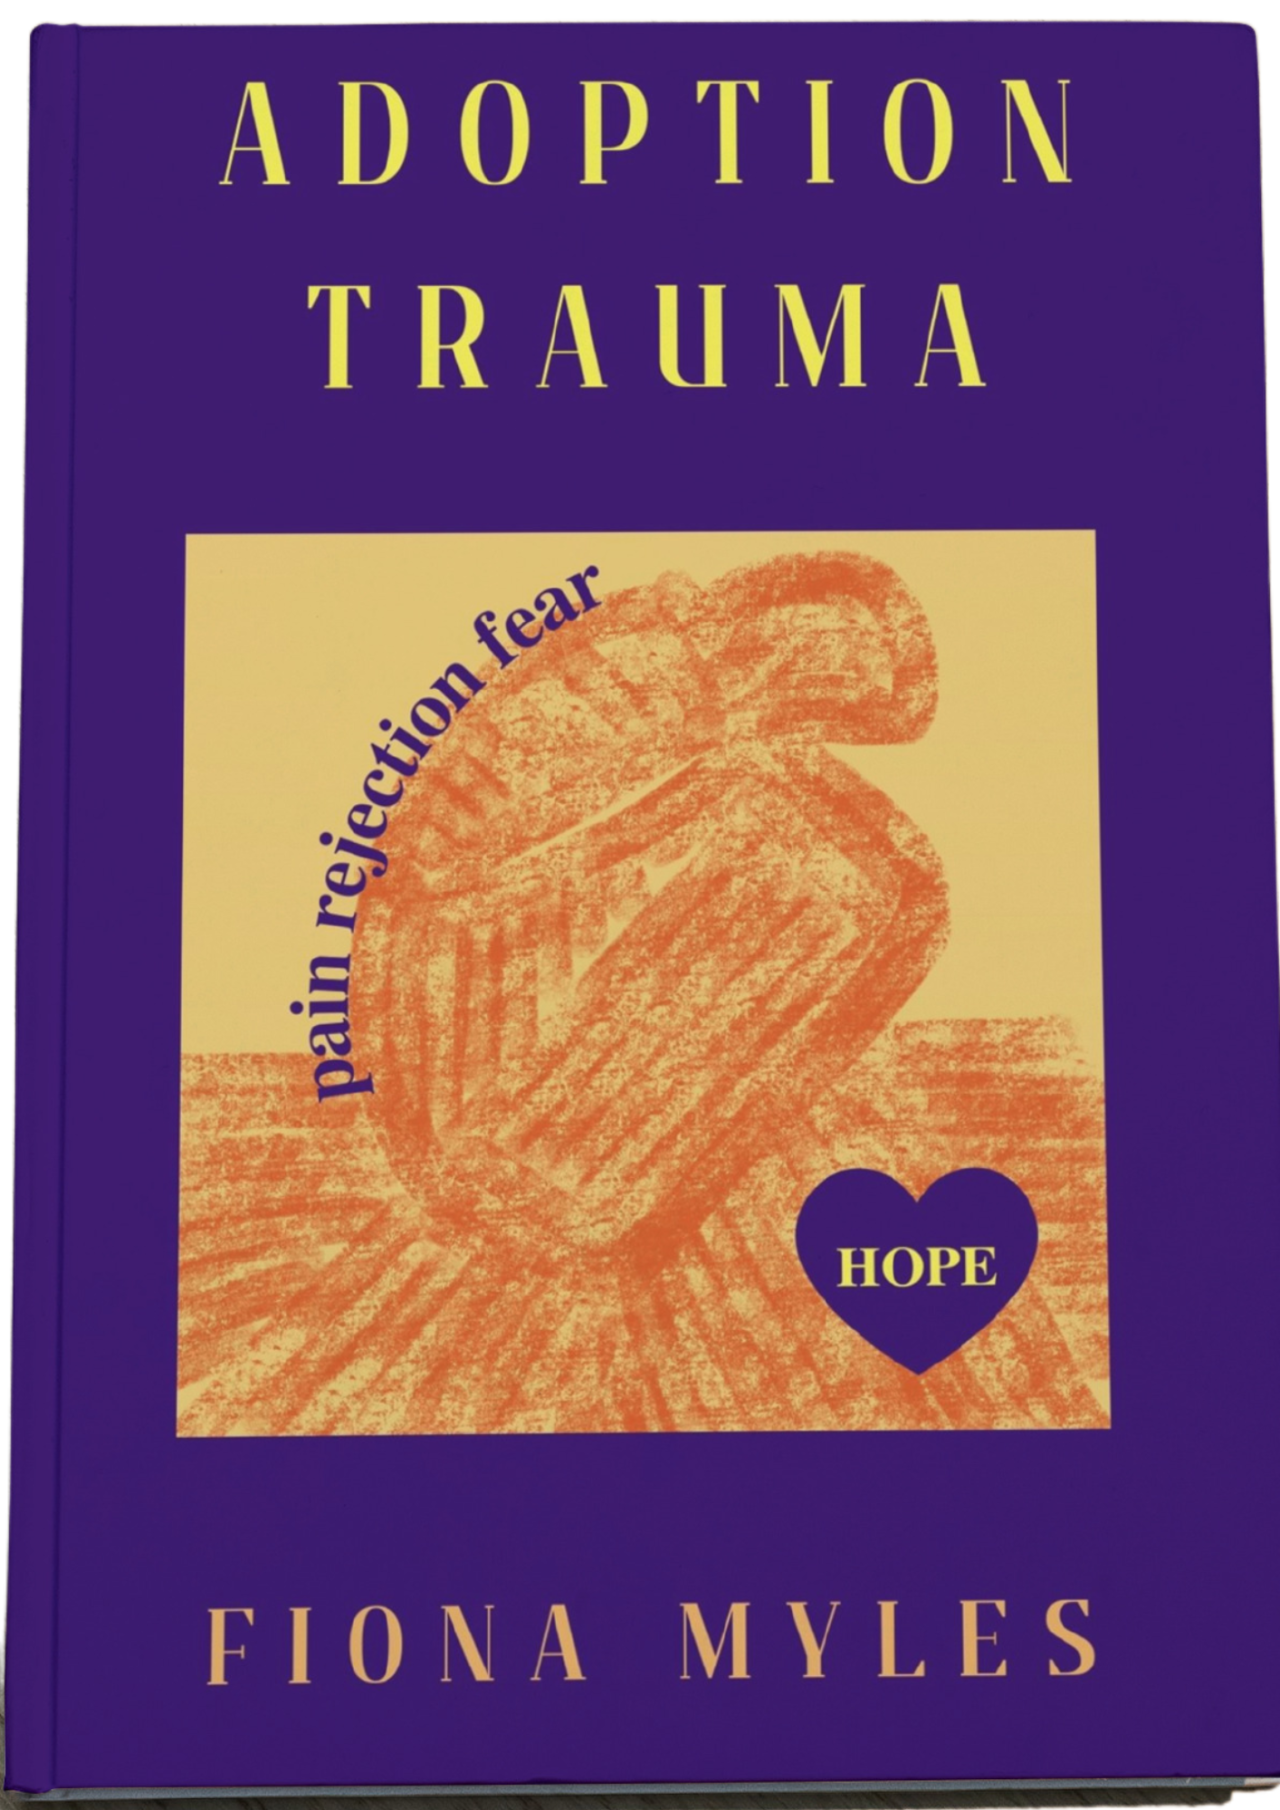 Adoption Trauma book by Fiona Myles